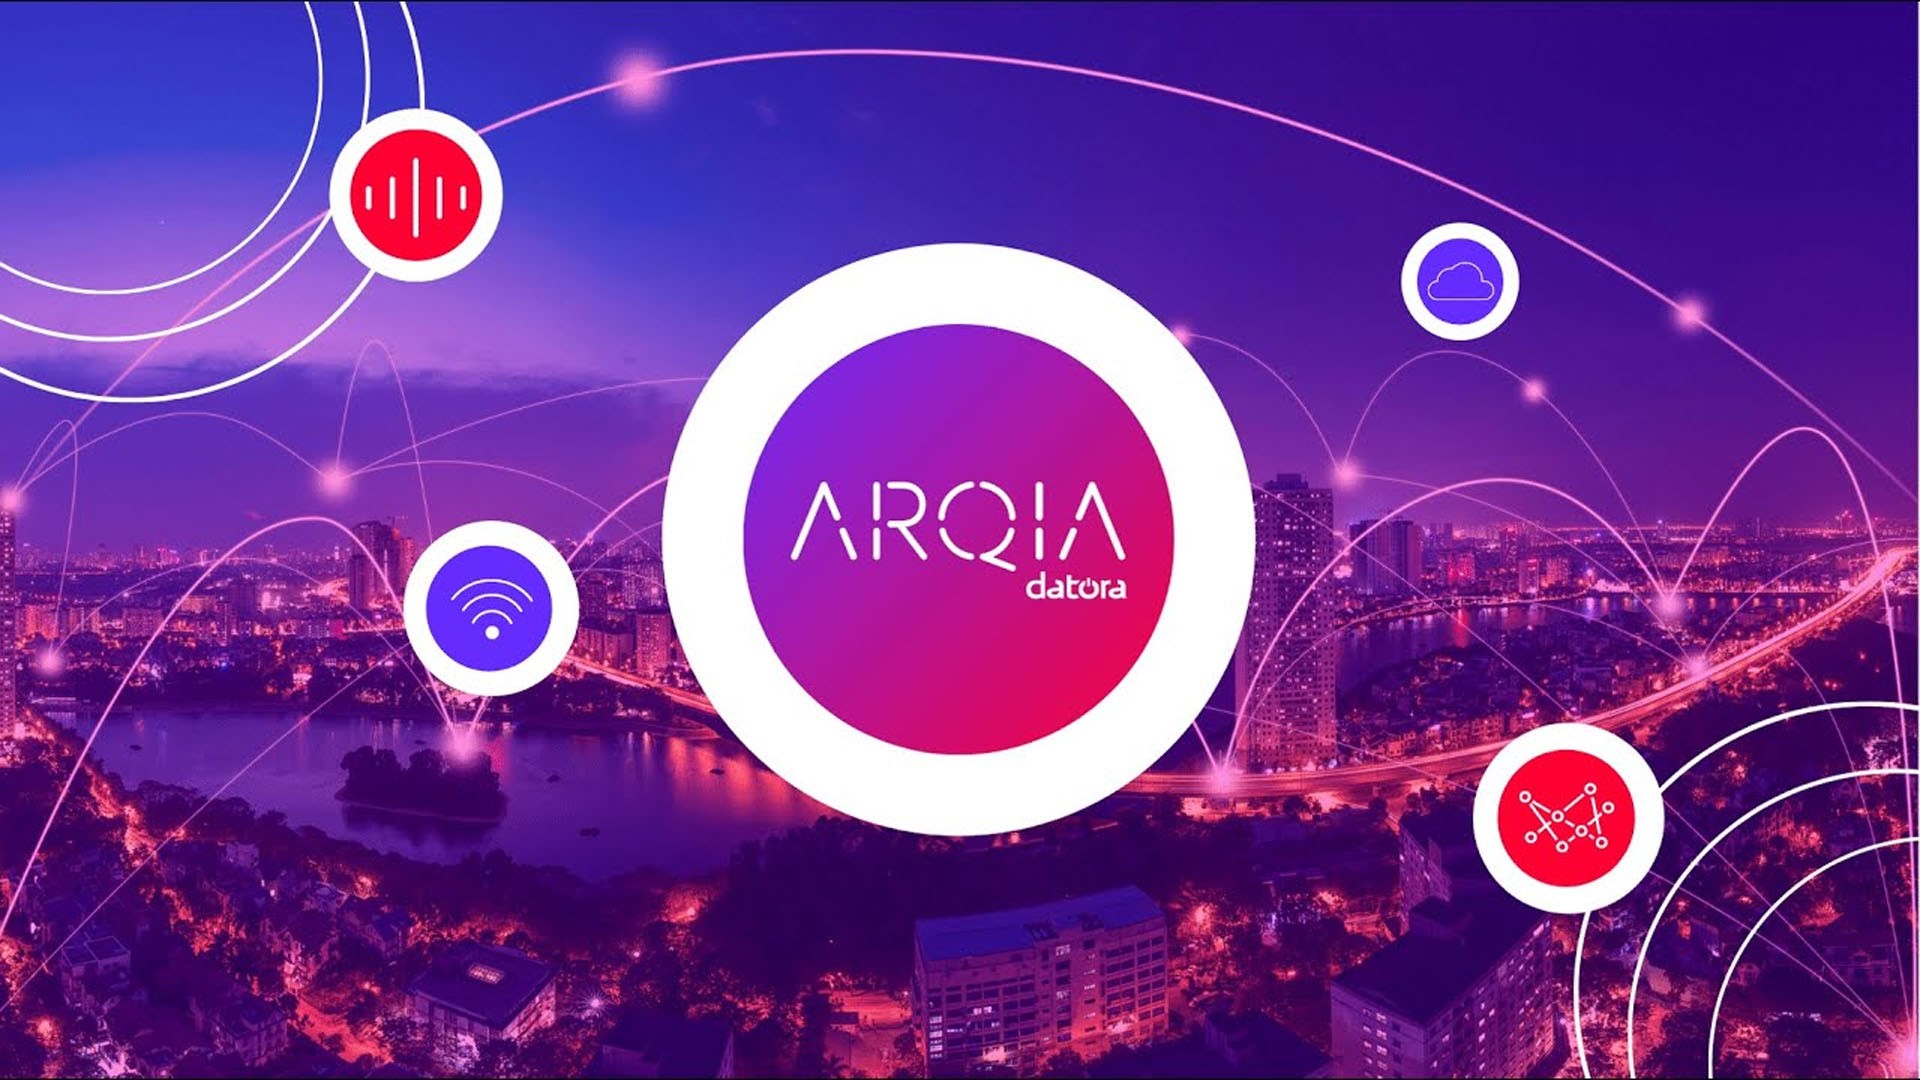 Arqia, voltada para IoT, expande cobertura para todo o pas a partir de acordo com a Oi